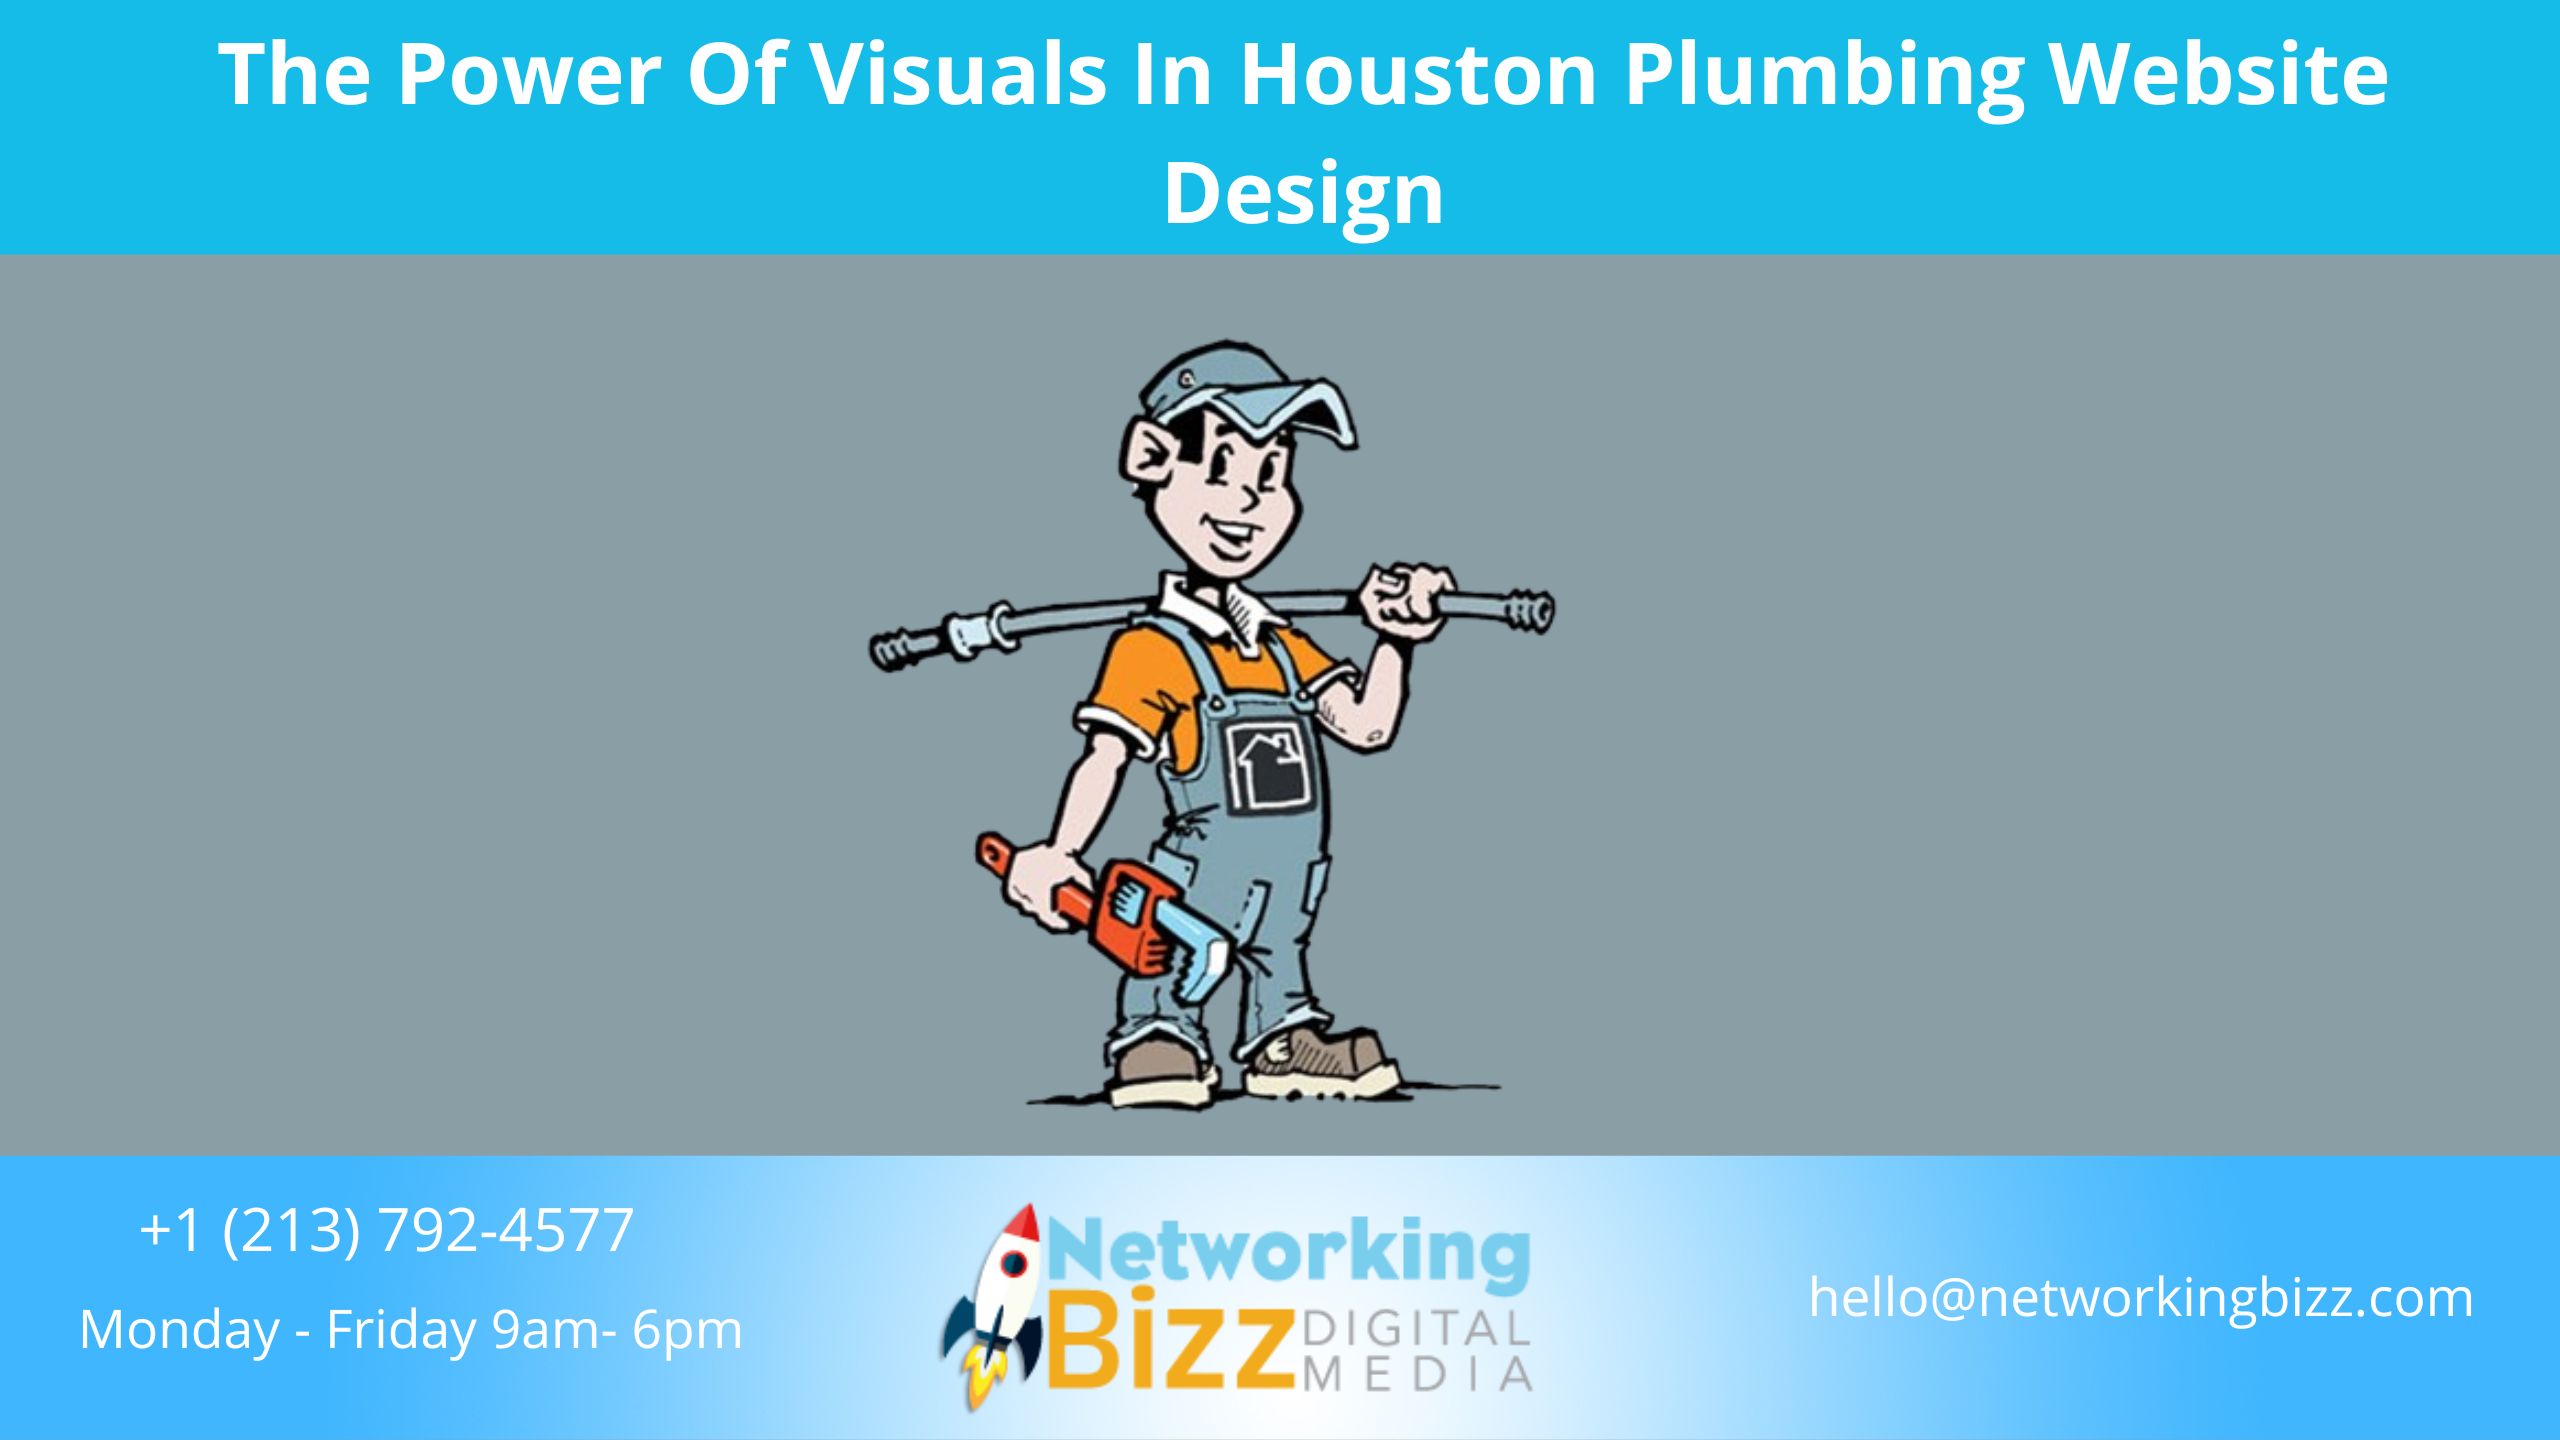 The Power Of Visuals In Houston Plumbing Website Design